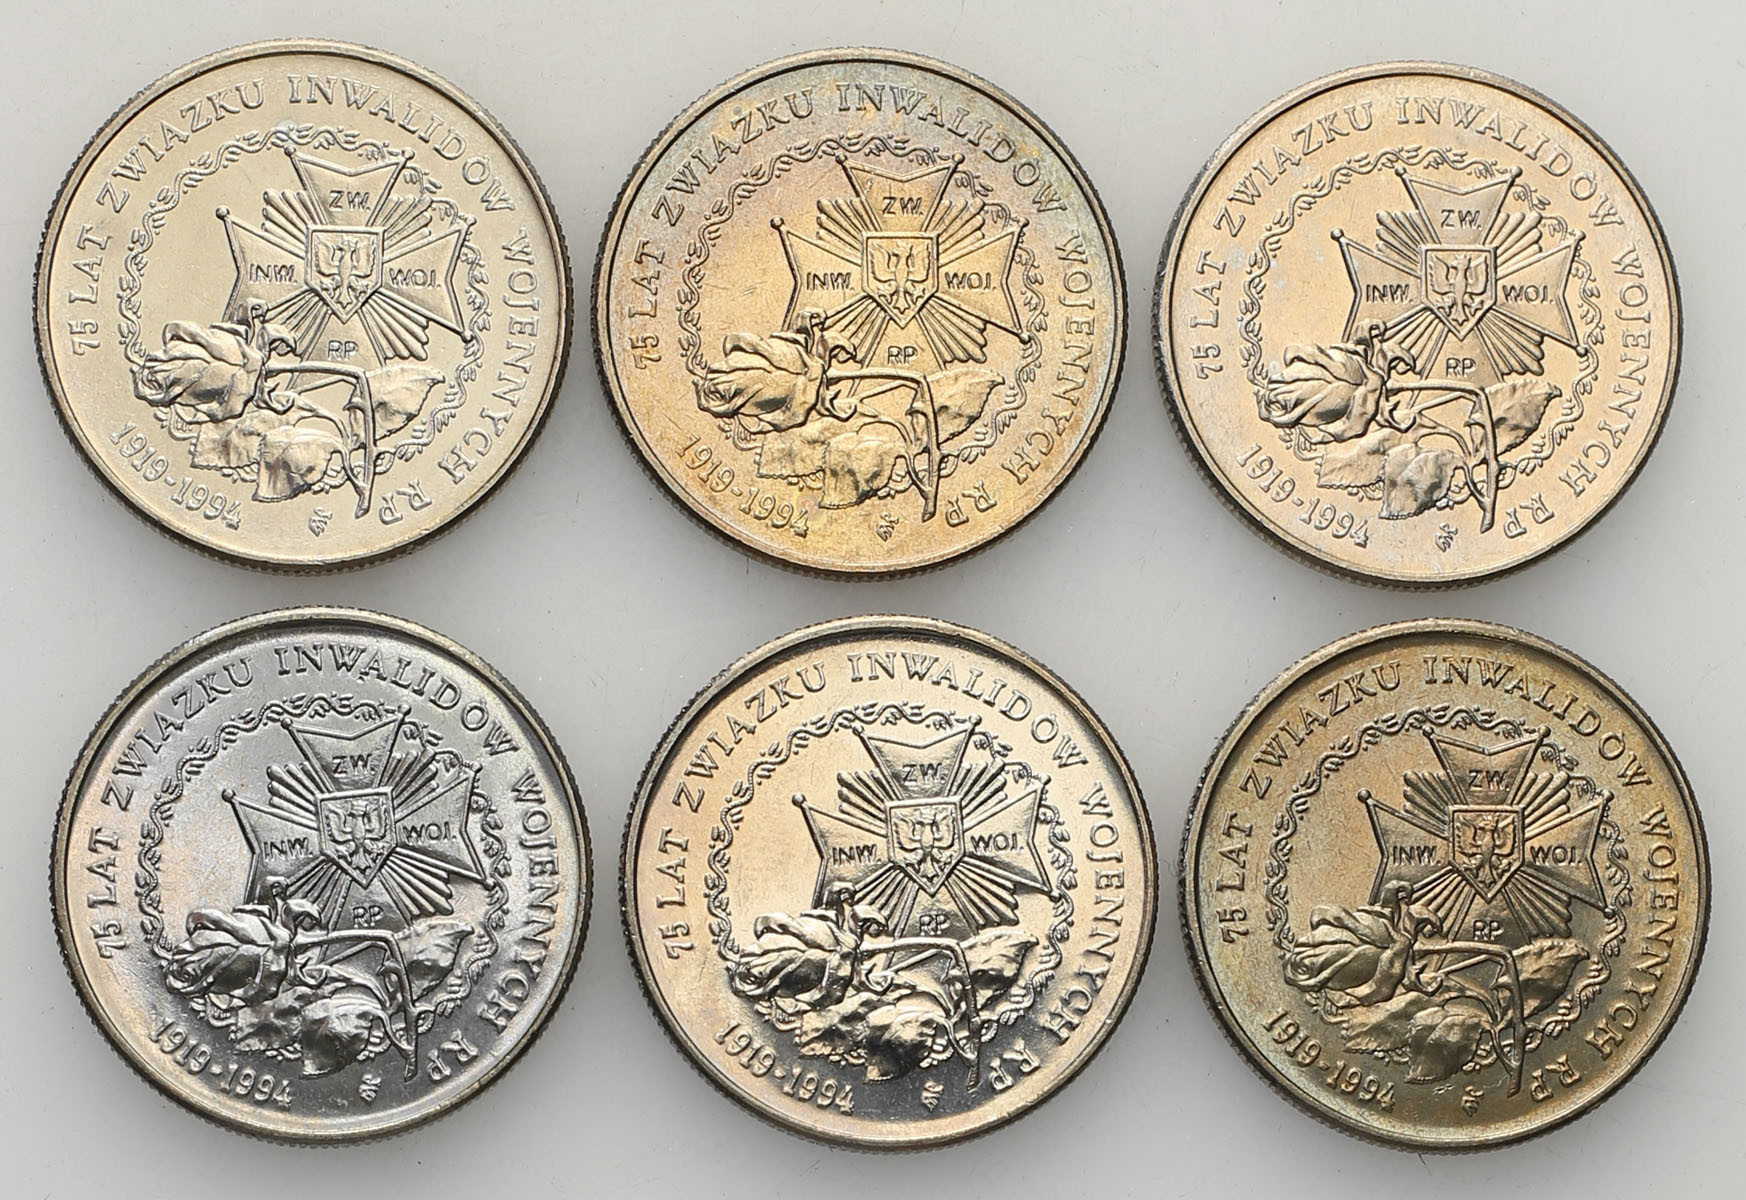 III RP 20.000 złotych 1994 - 75 lat Związku Inwalidów Wojennych, zestaw 6 sztuk